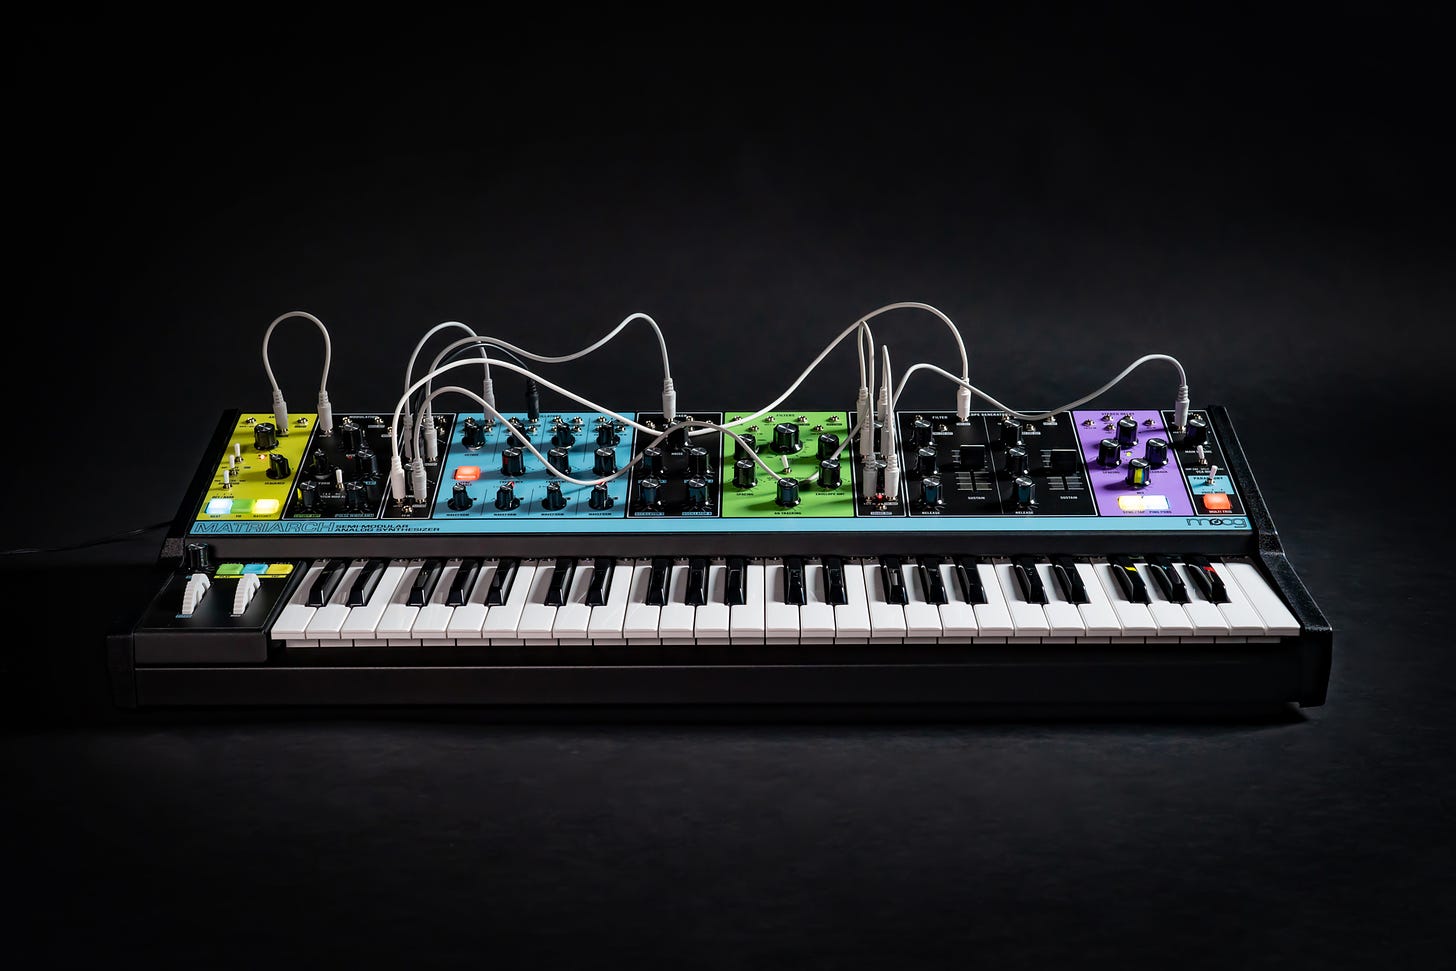 Moog Matriarch synthesizer. (Credit: www.moogmusic.com)